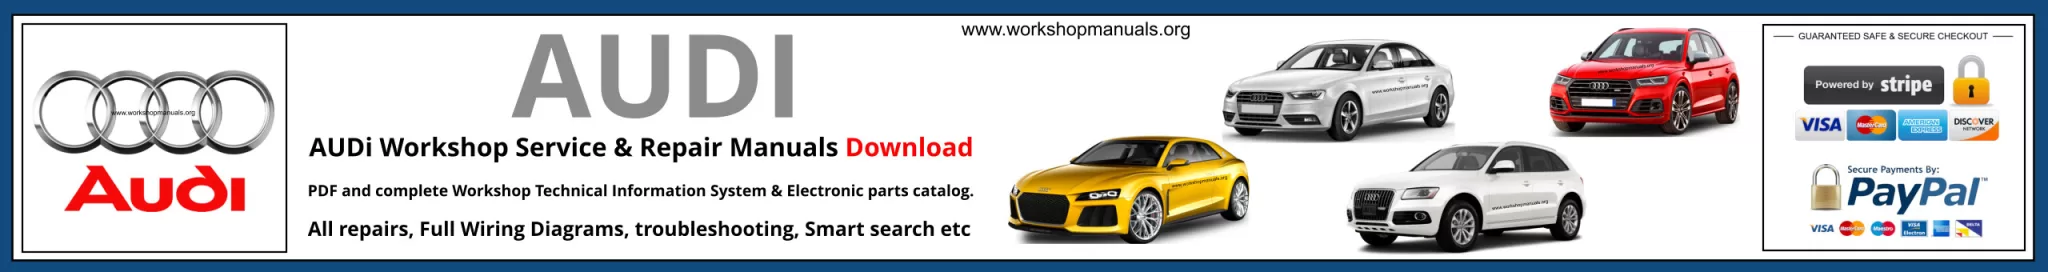 Audi Workshop Repair Manual Banner